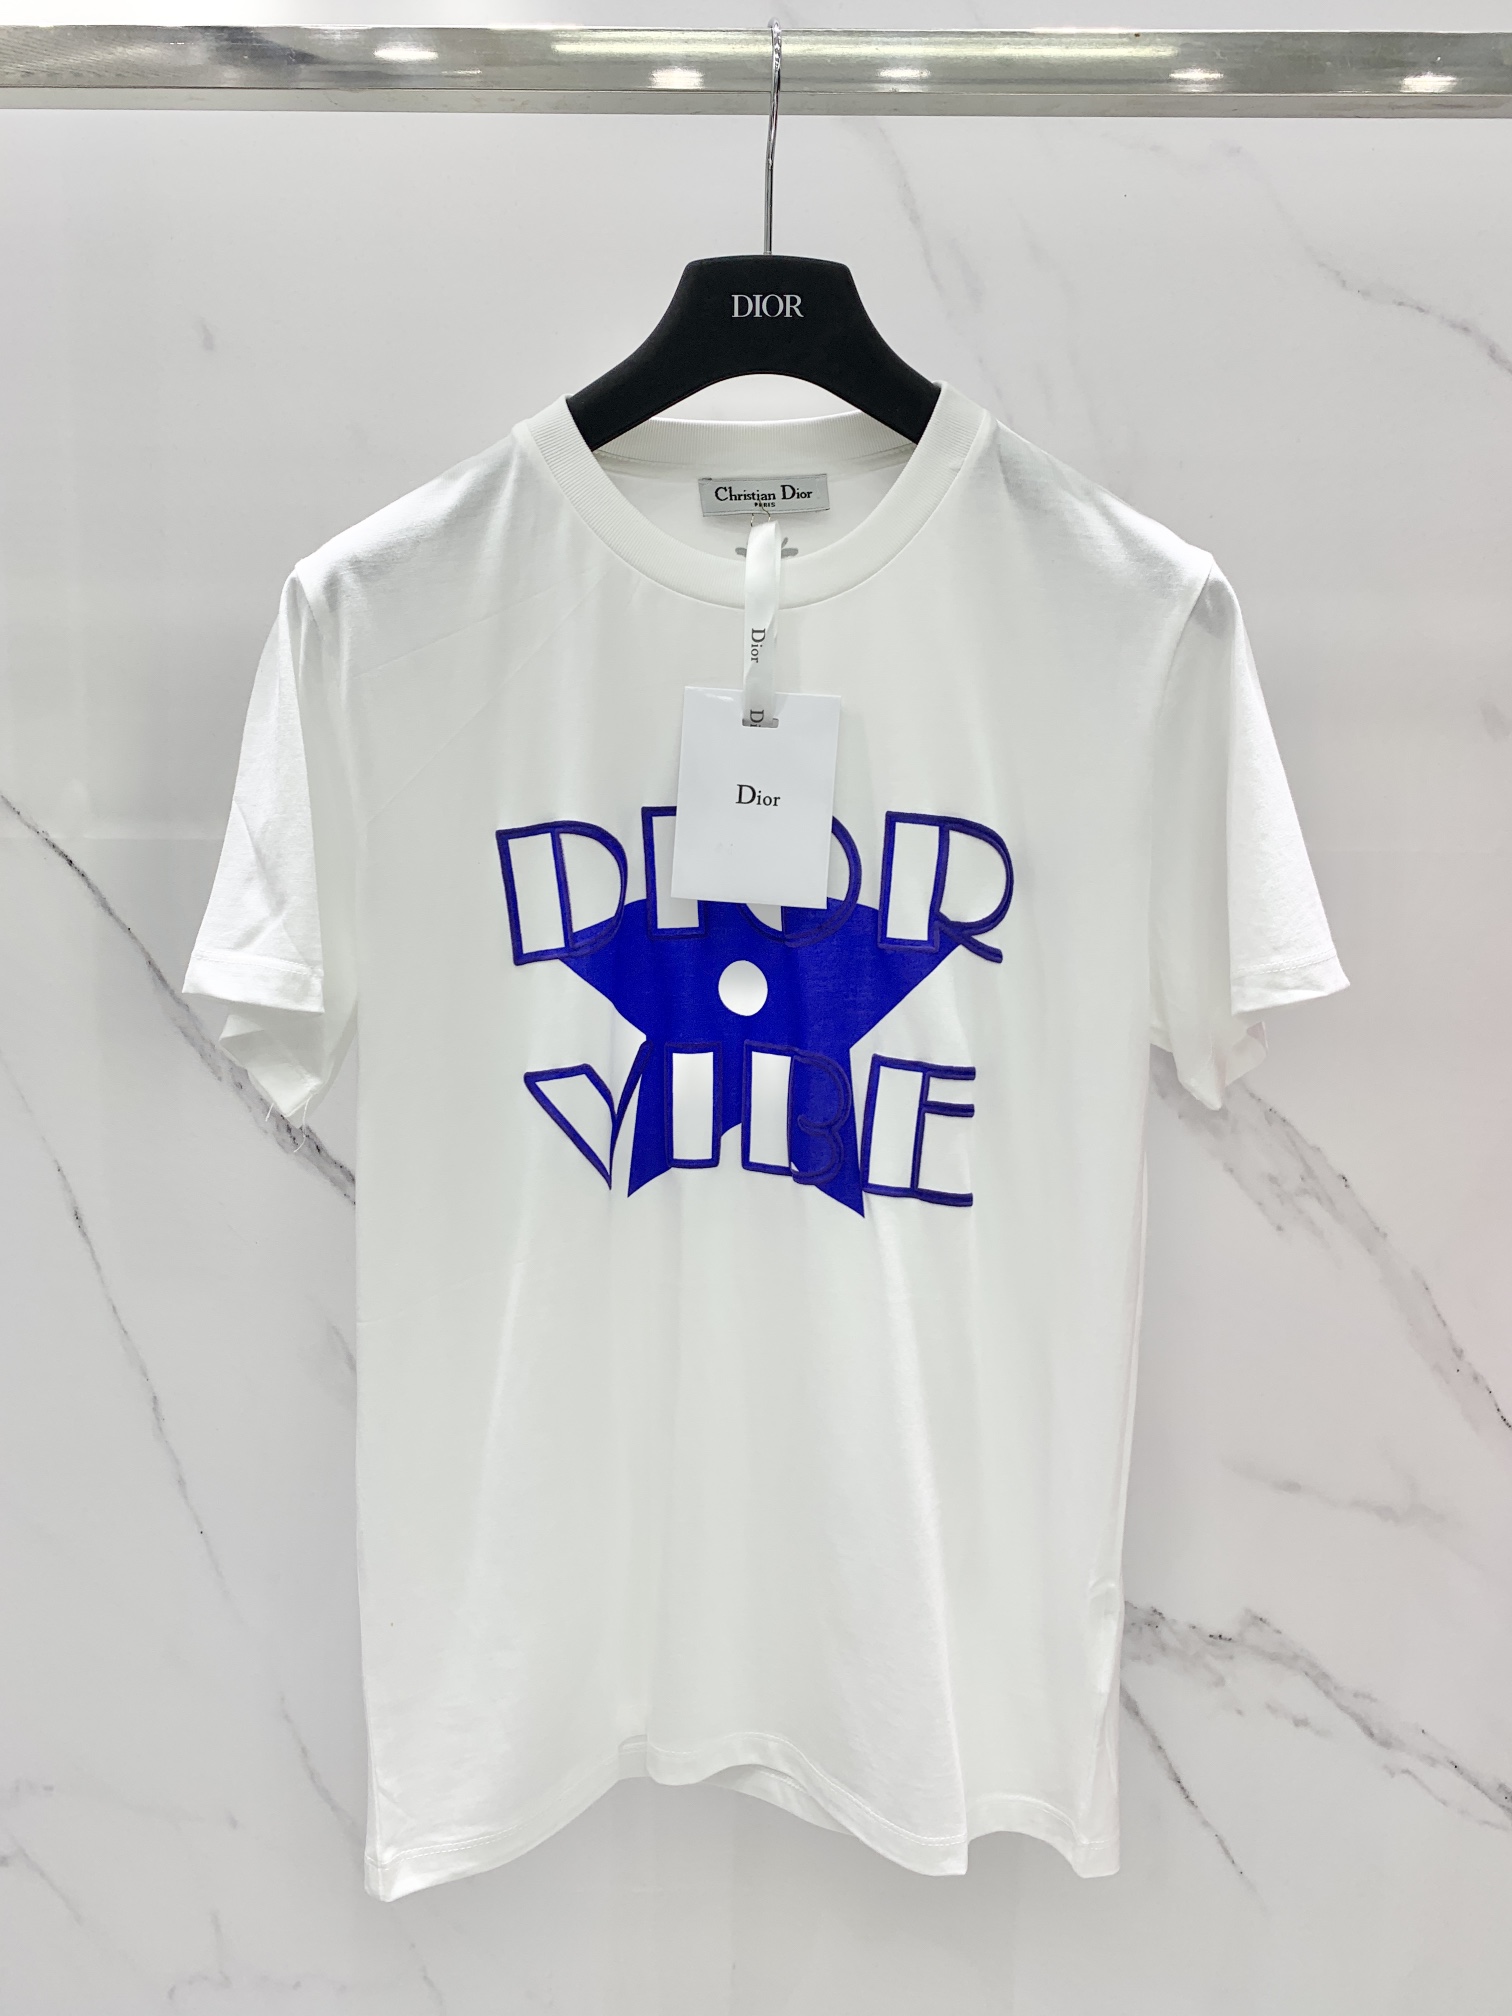 Dior Dior x Kaws Tee Shirt  Grailed